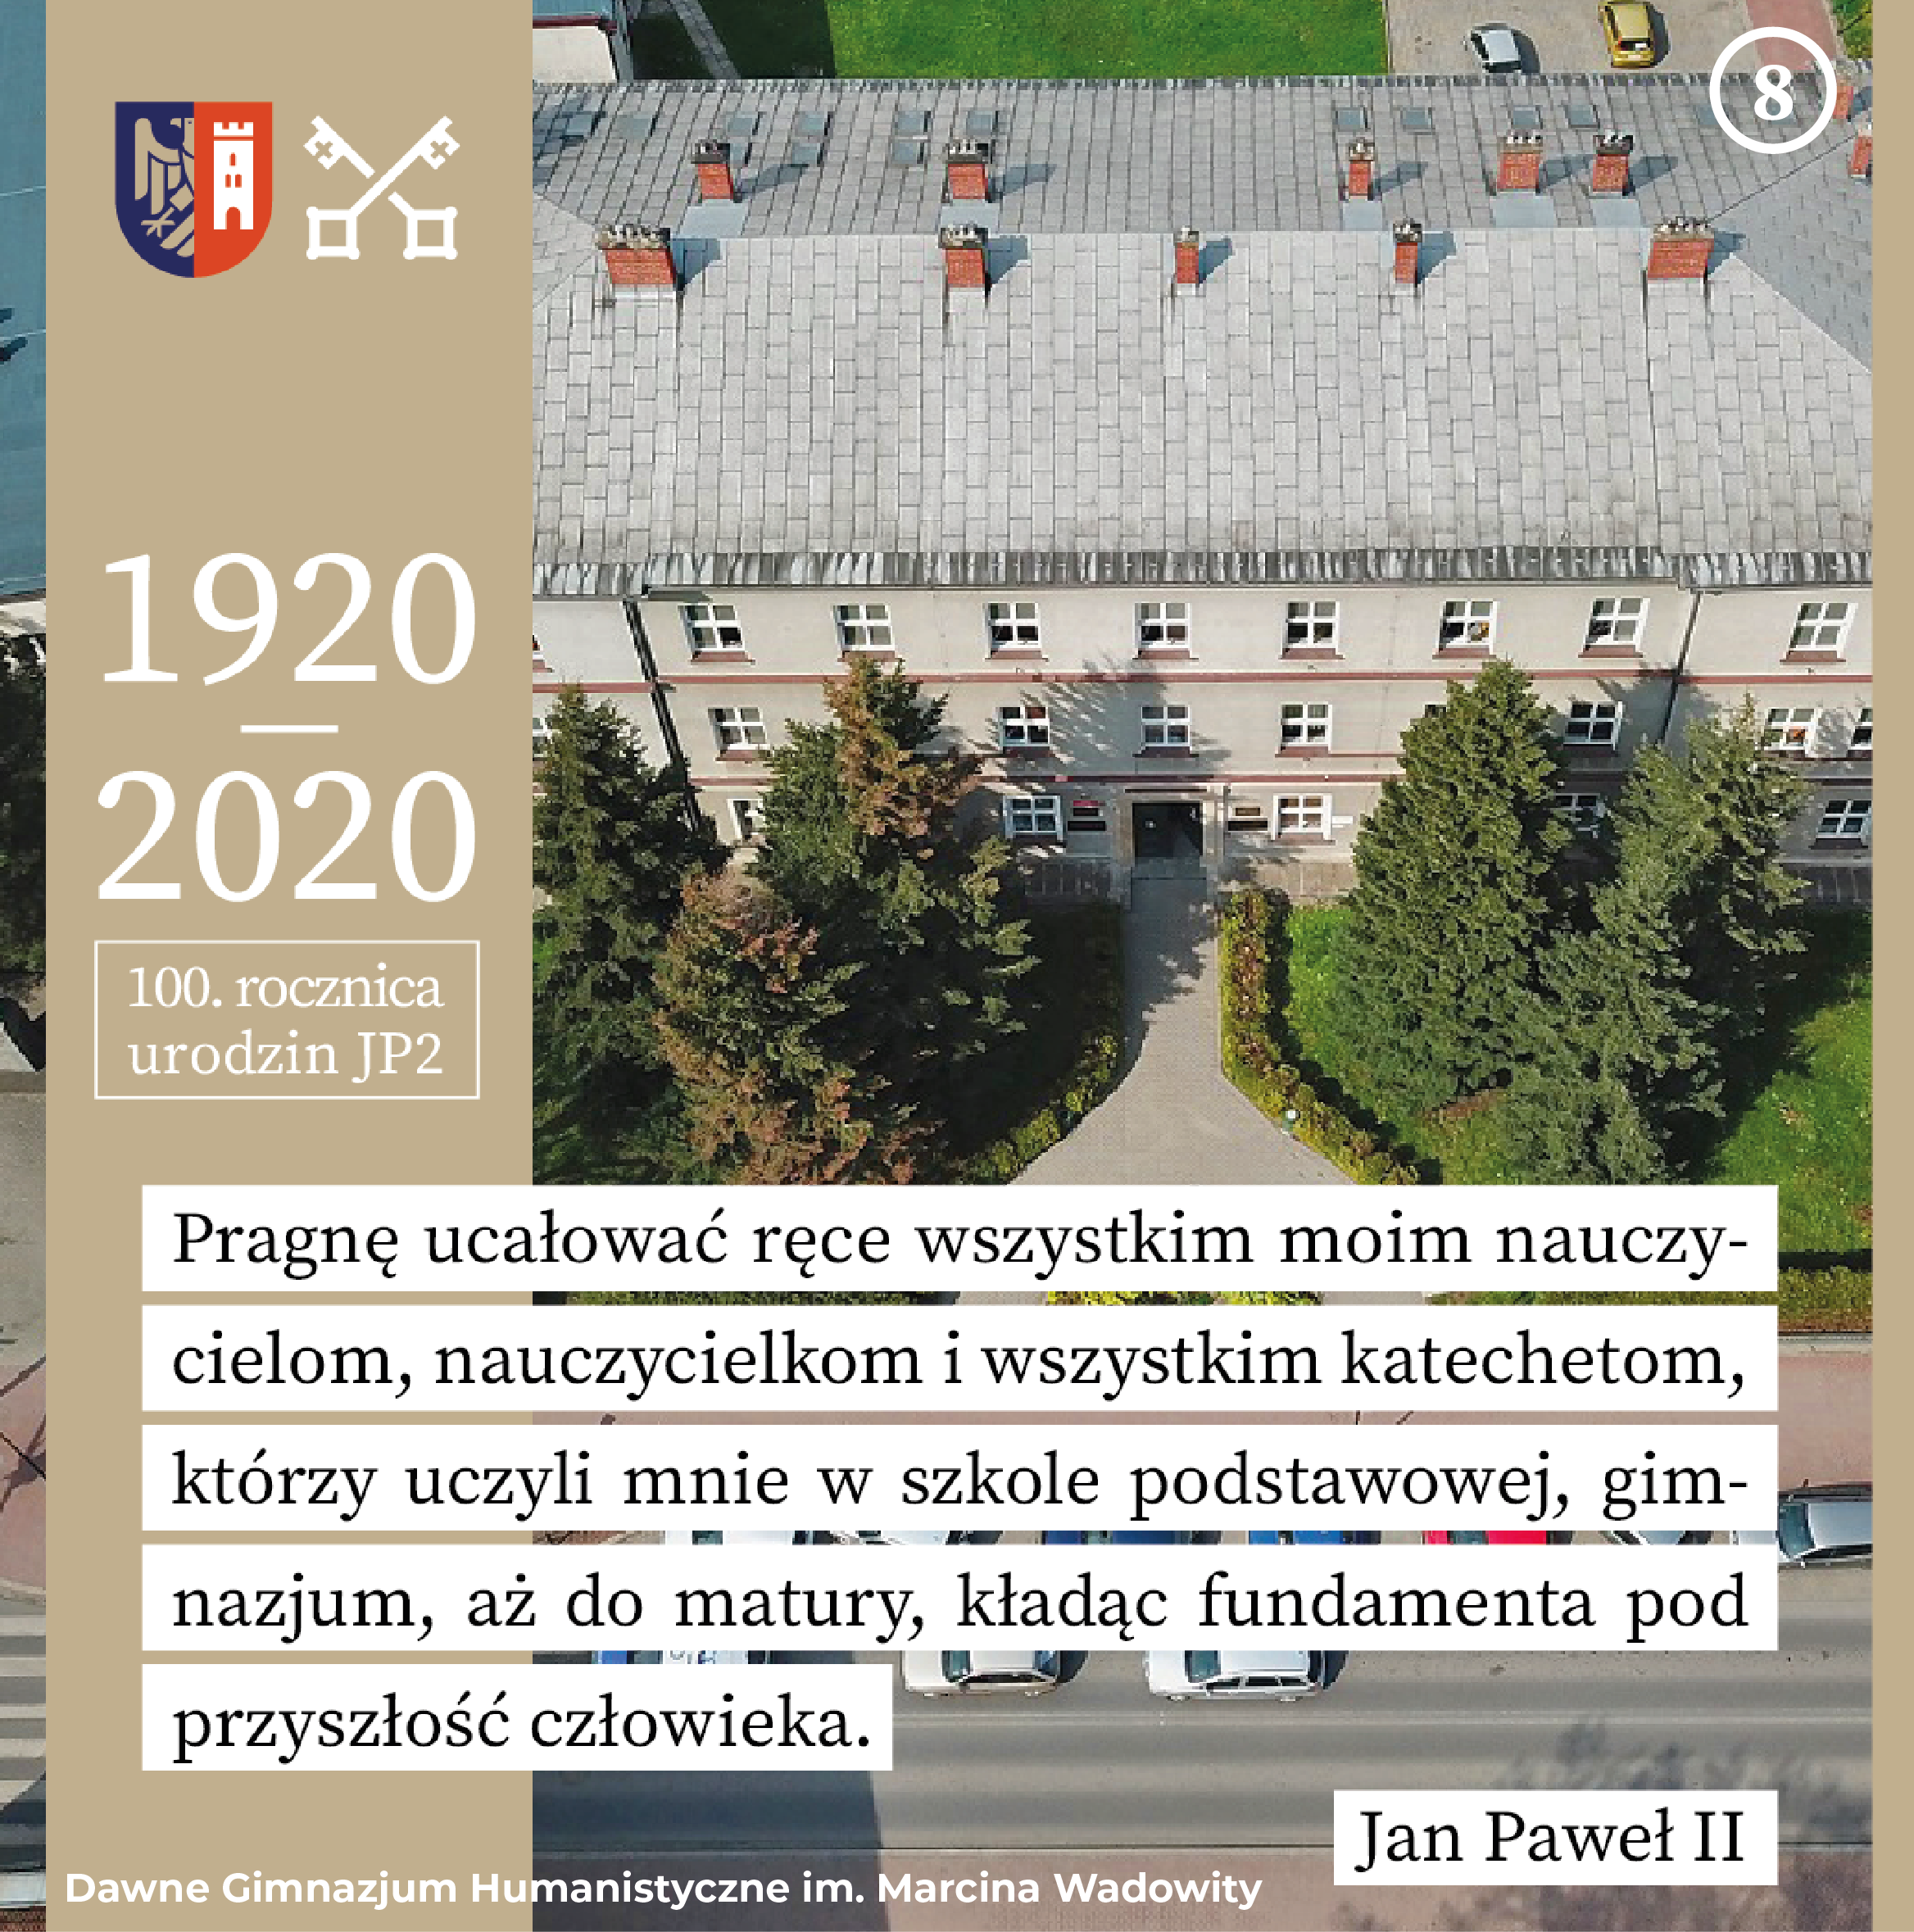 grafika ze zdjęciem gmachu dawnego Gimnazjum Humanistycznego im. Marcina Wadowity